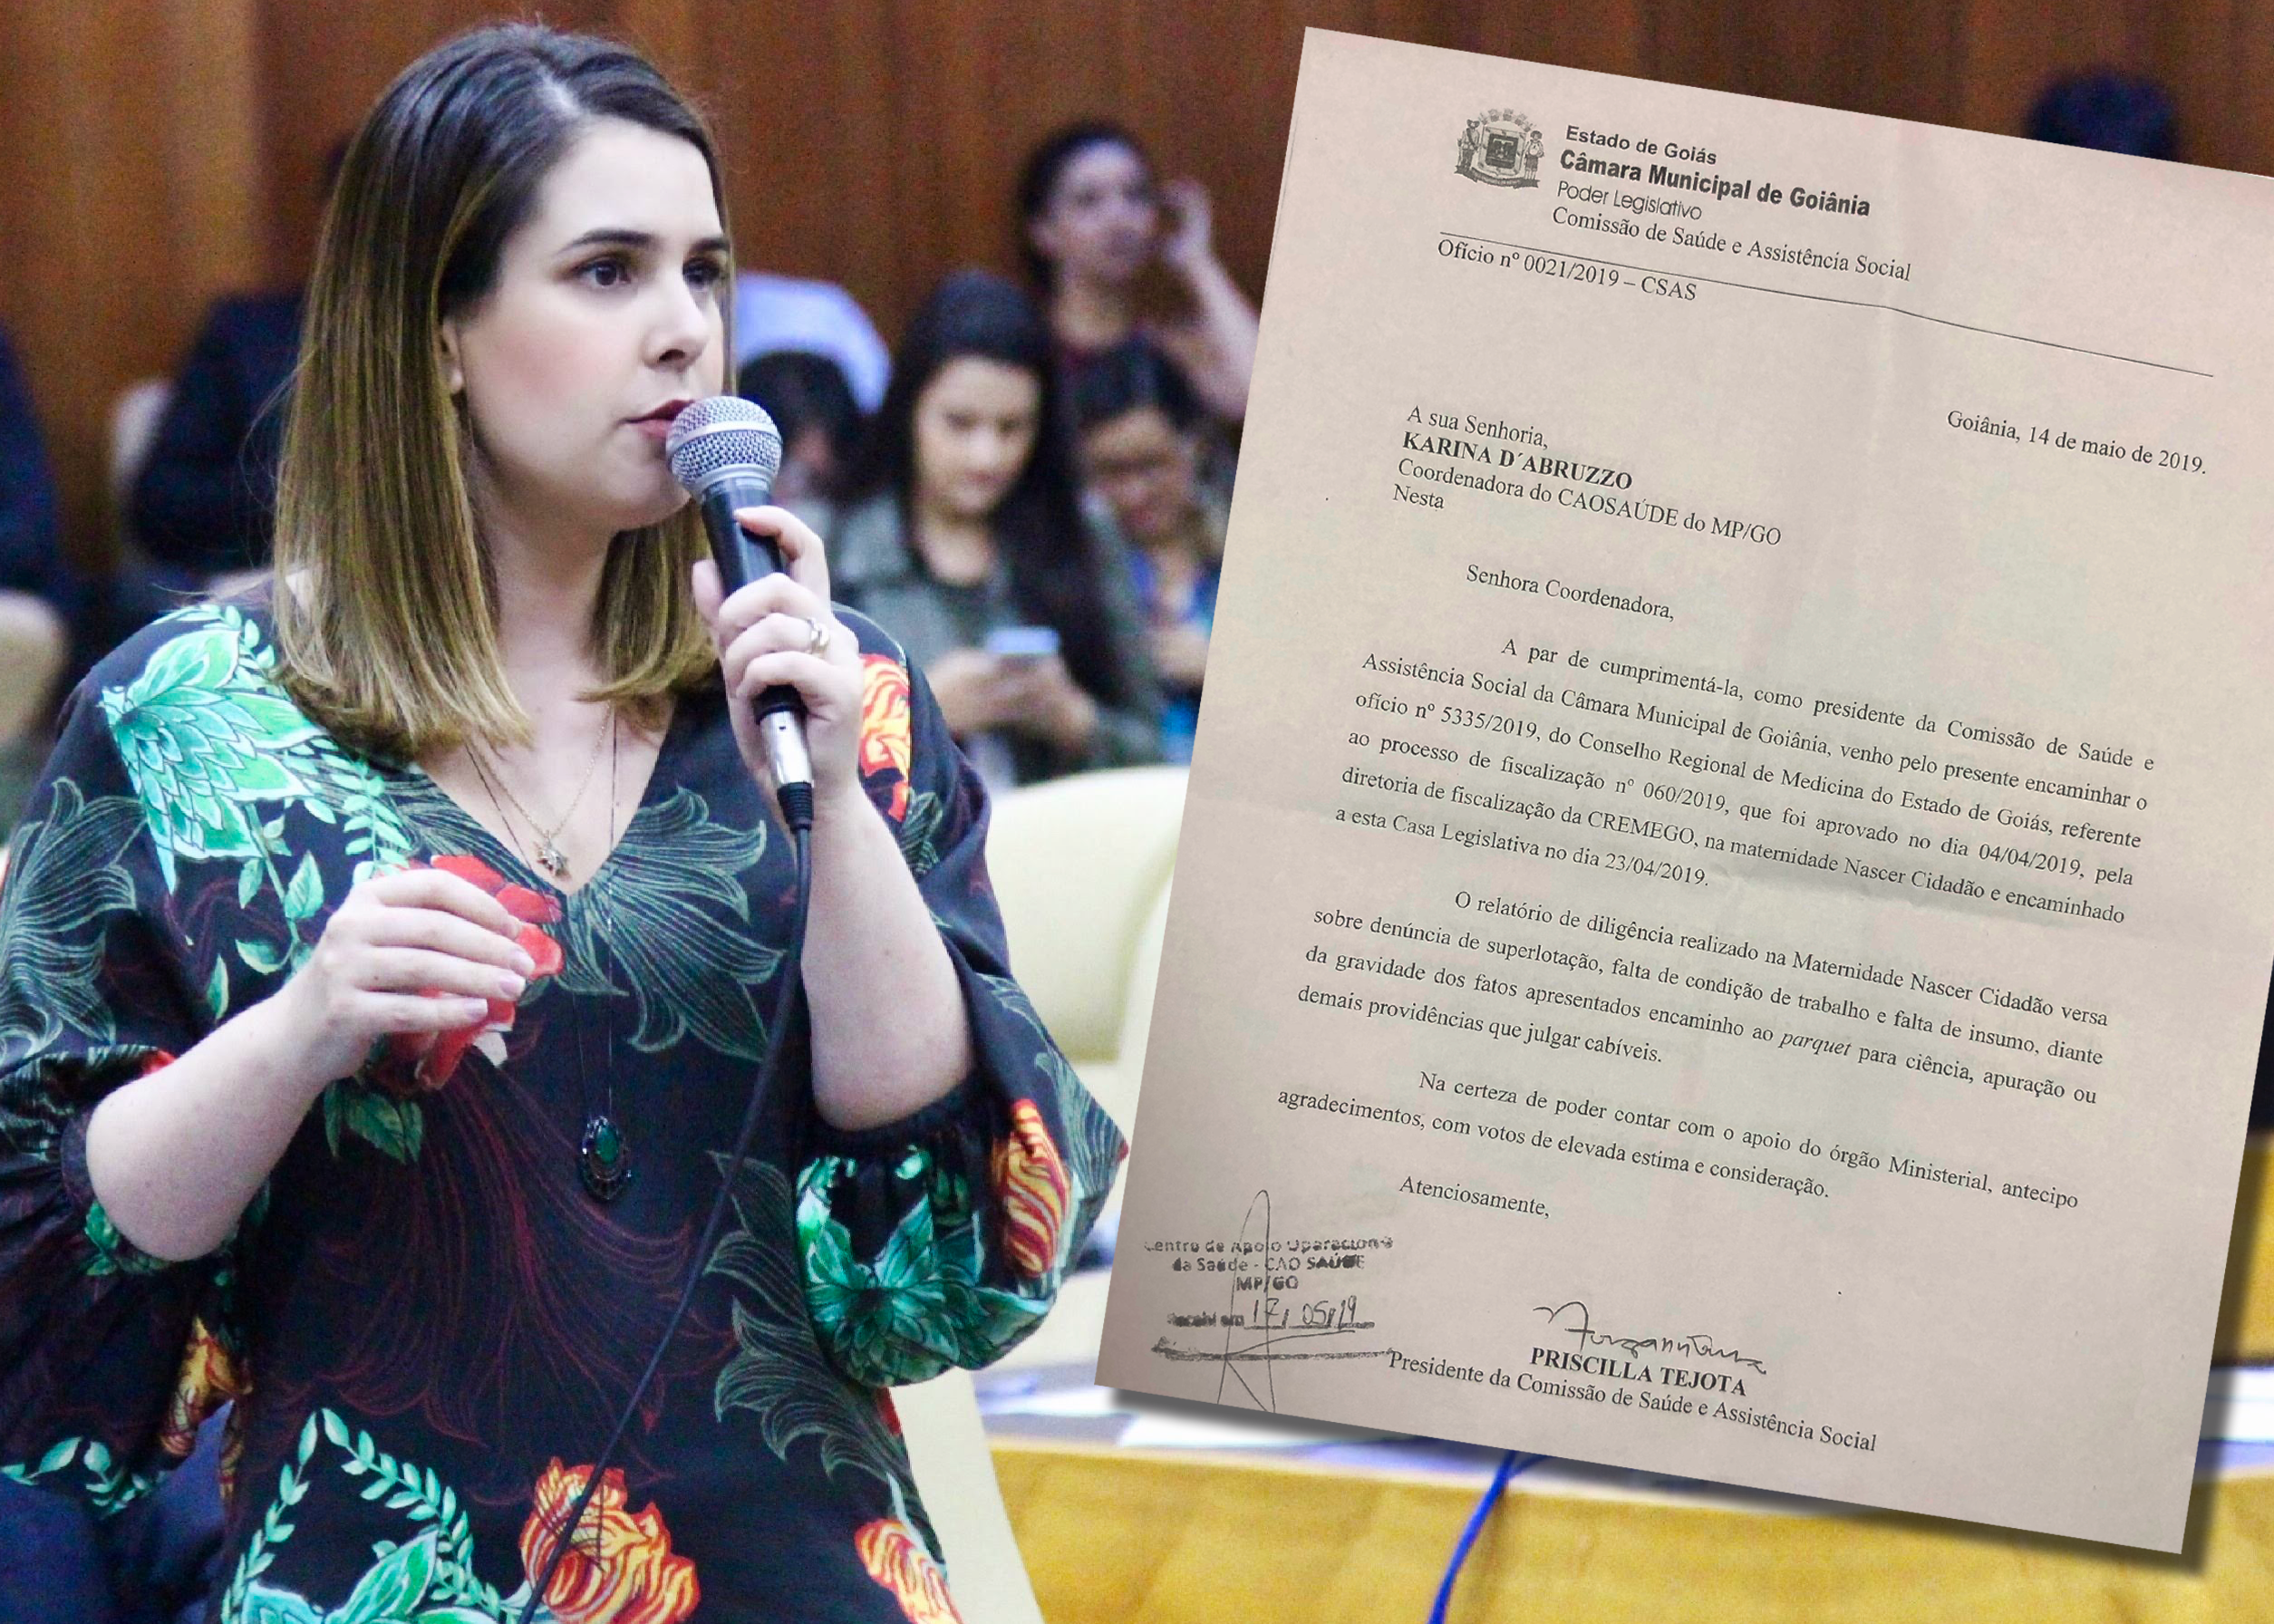 Priscilla Tejota encaminha ao MP denuncia de precariedade na Maternidade Nascer Cidadão